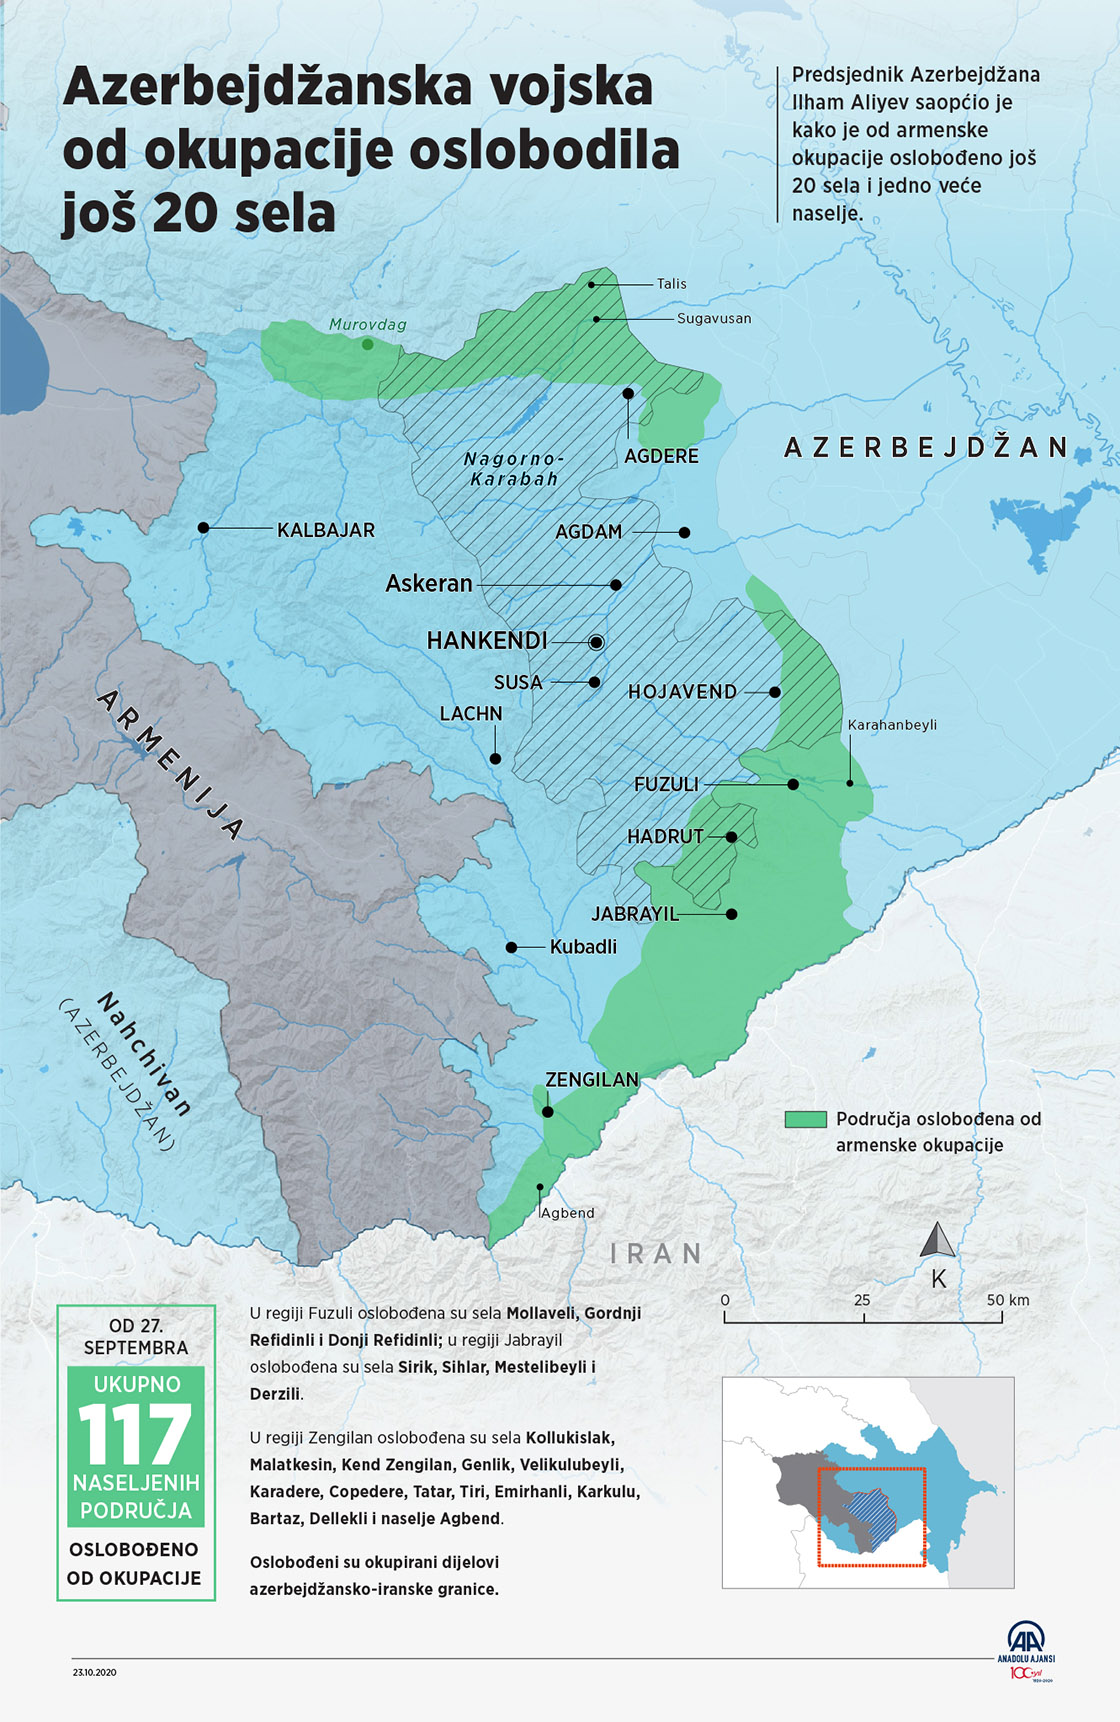 Azerbejdžanska vojska nastavila s akcijama oslobađanja okupiranog teritorija 